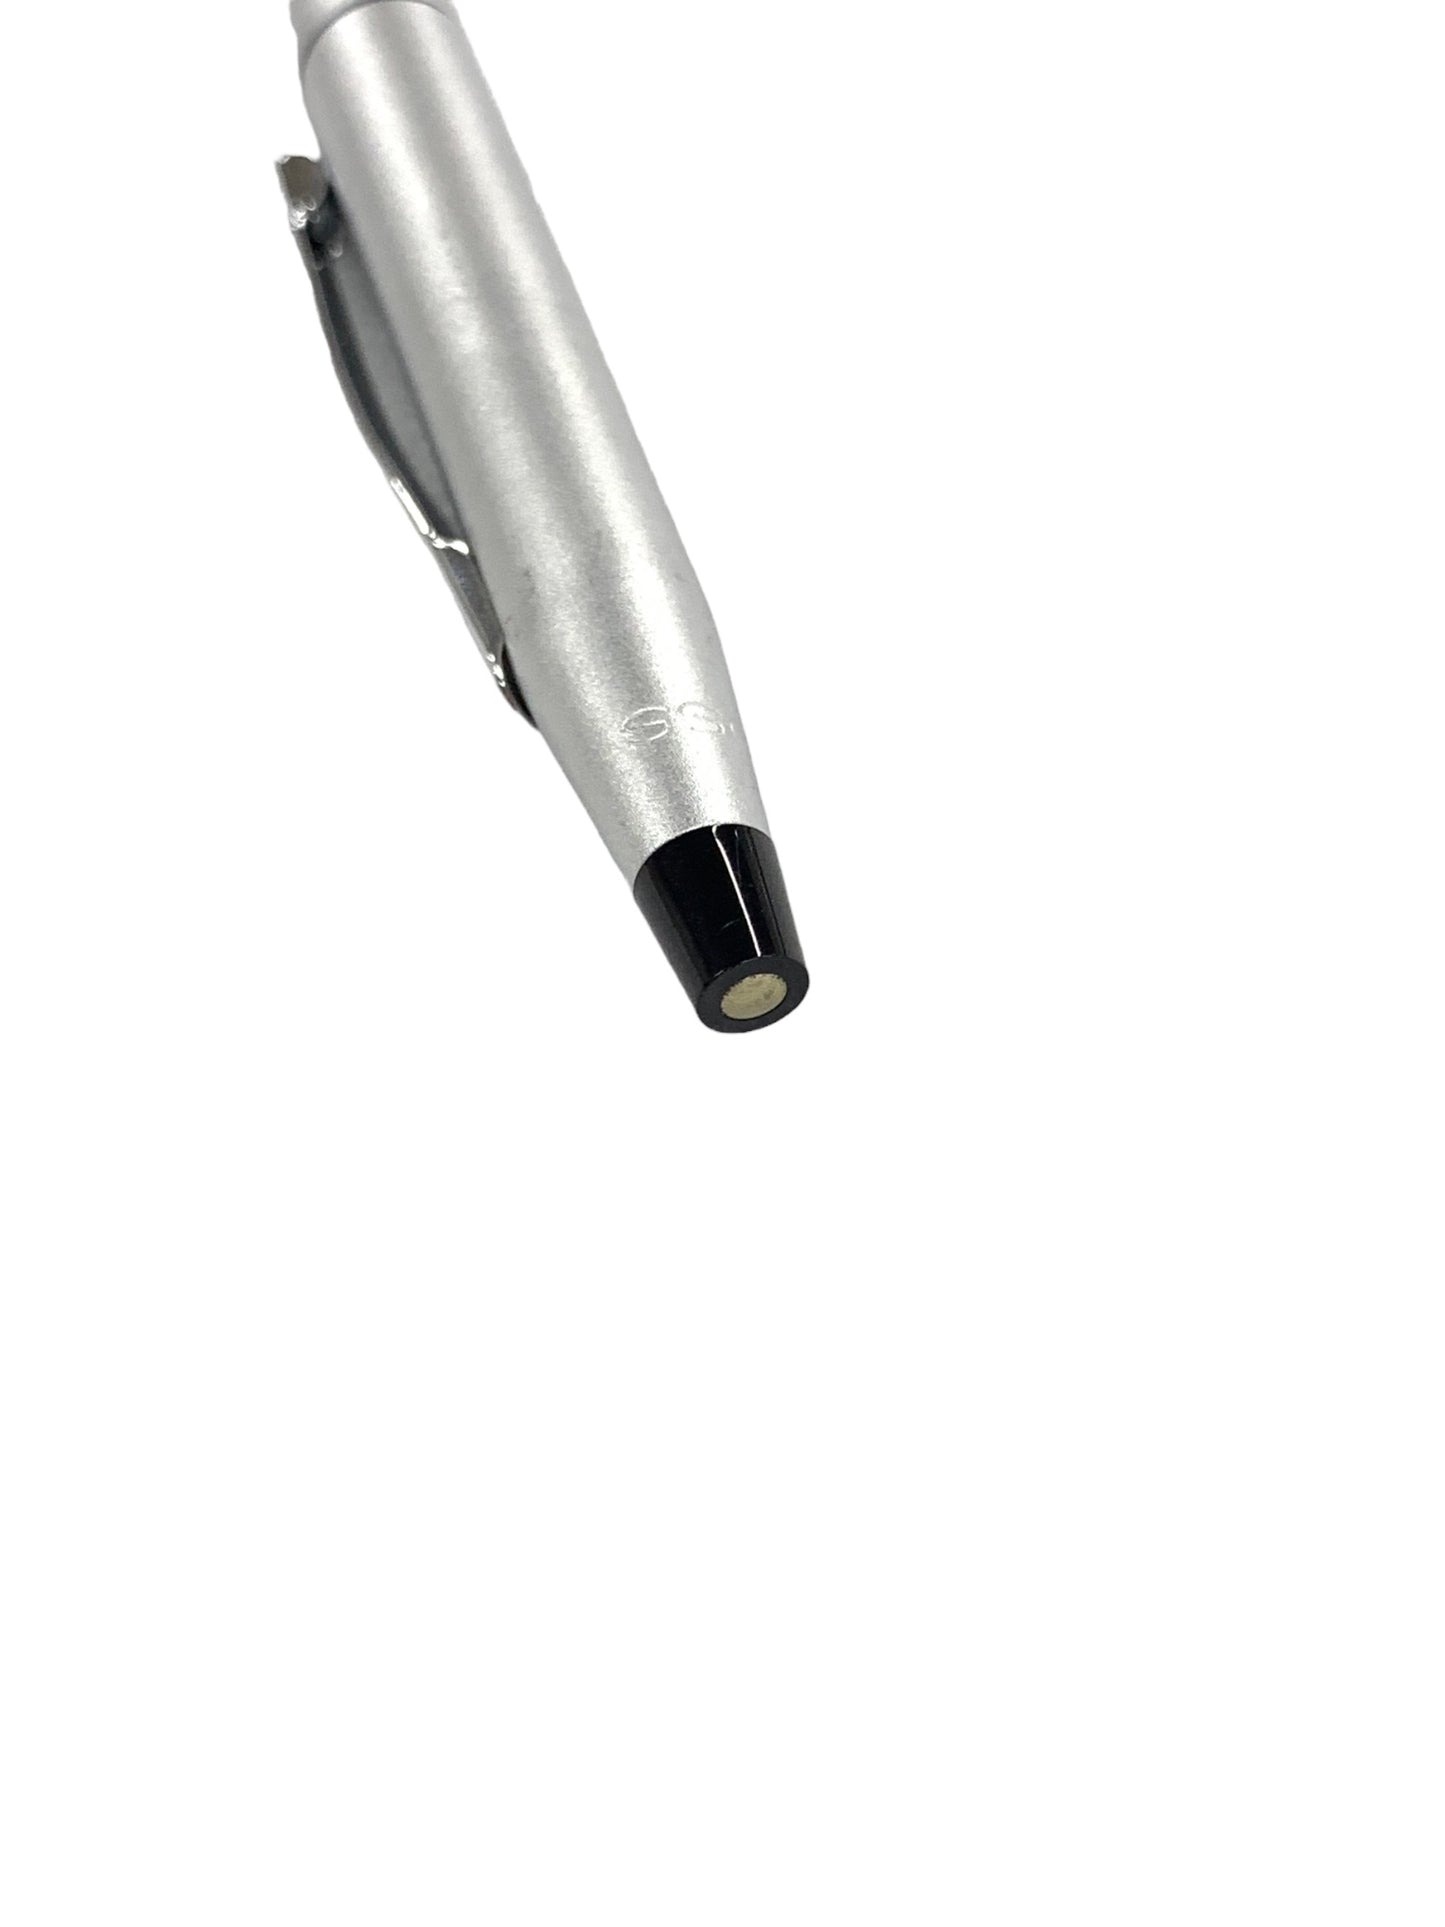 クロス ボールペン シルバー ツィスト式 ITZXS5D1V8PO